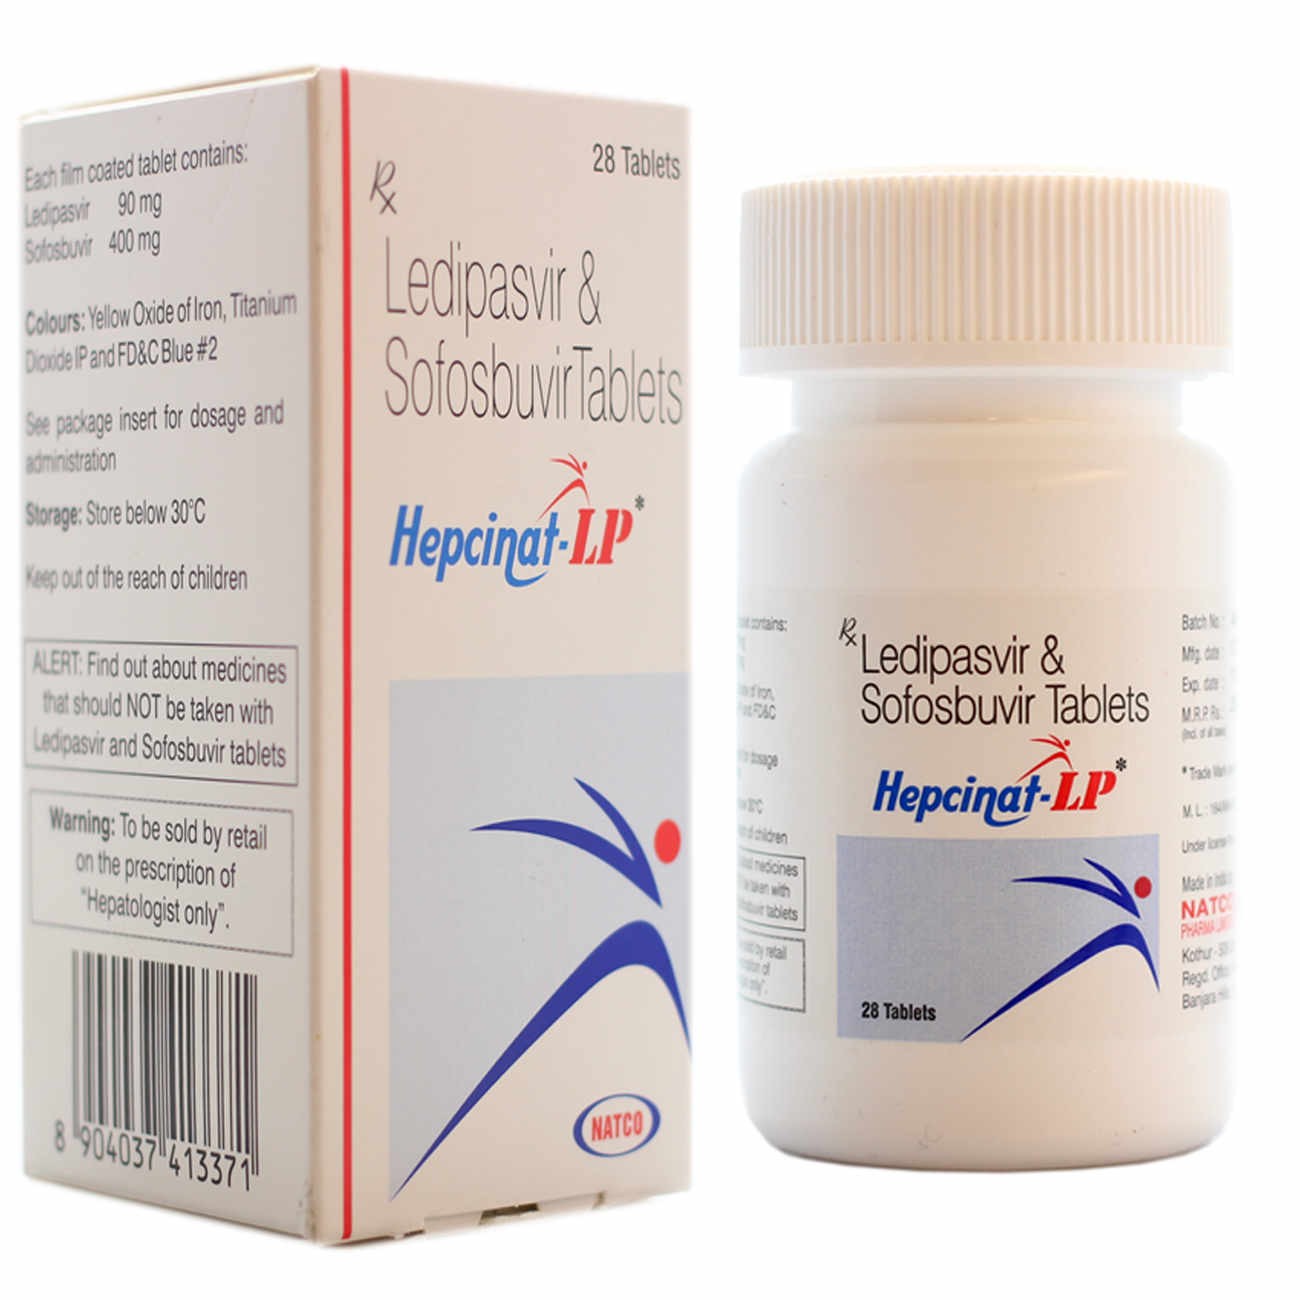 Hepcinat LP Sofosbuvir 400mg ledipasvir 90 mg